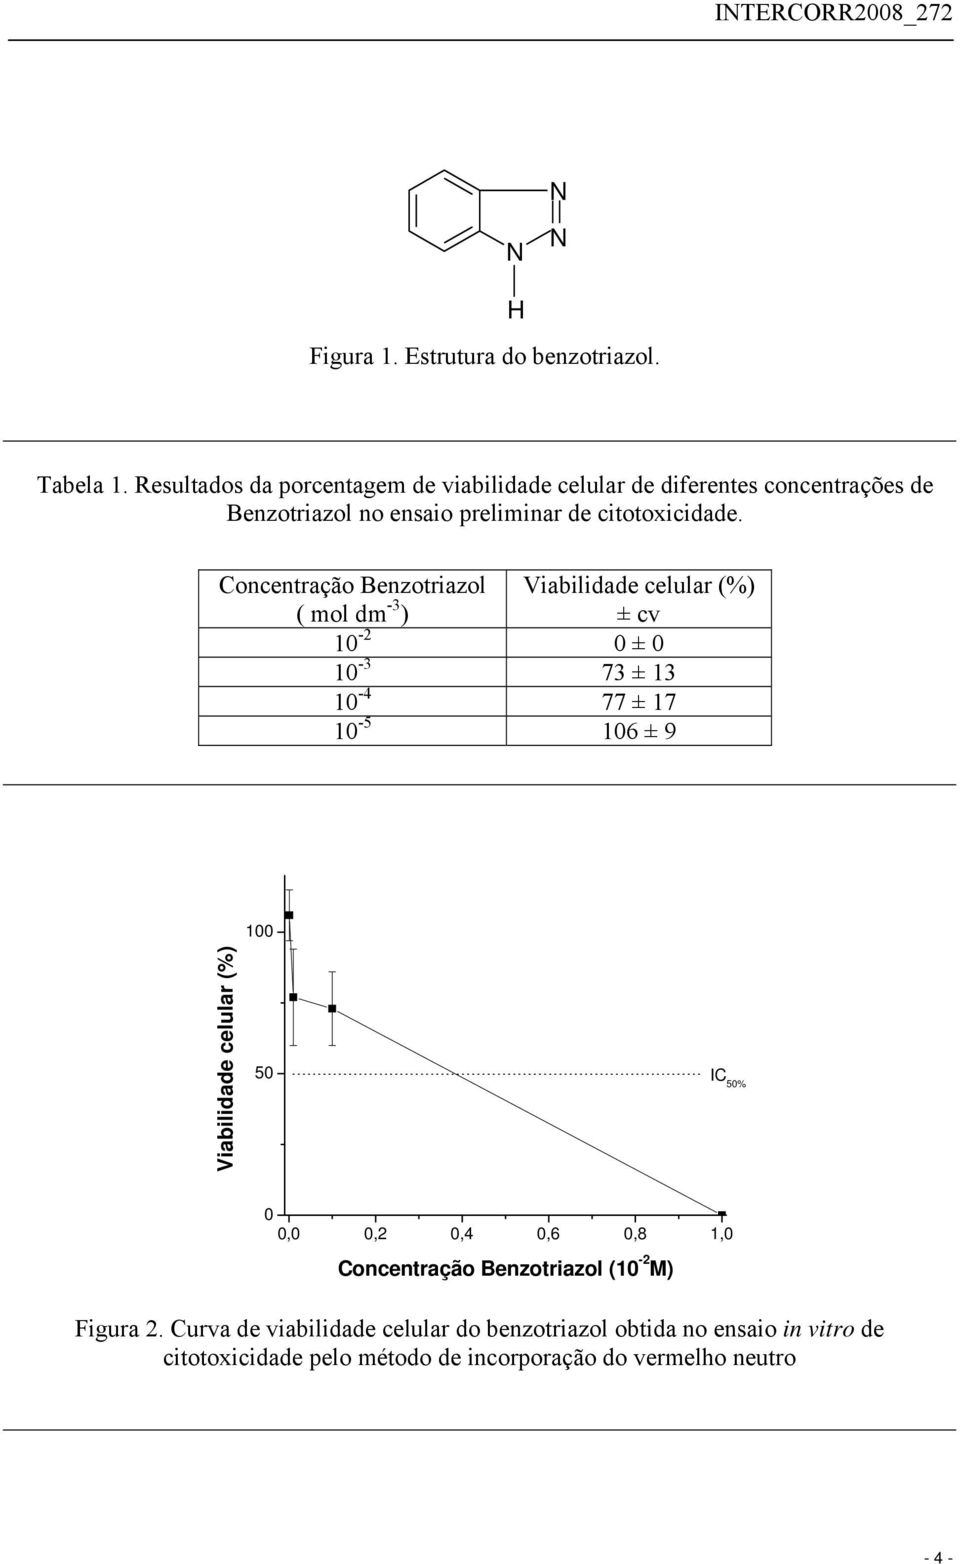 Concentração Benzotriazol ( mol dm -3 ) Viabilidade celular (%) ± cv 10-2 0 ± 0 10-3 73 ± 13 10-4 77 ± 17 10-5 106 ± 9 100 Viabilidade